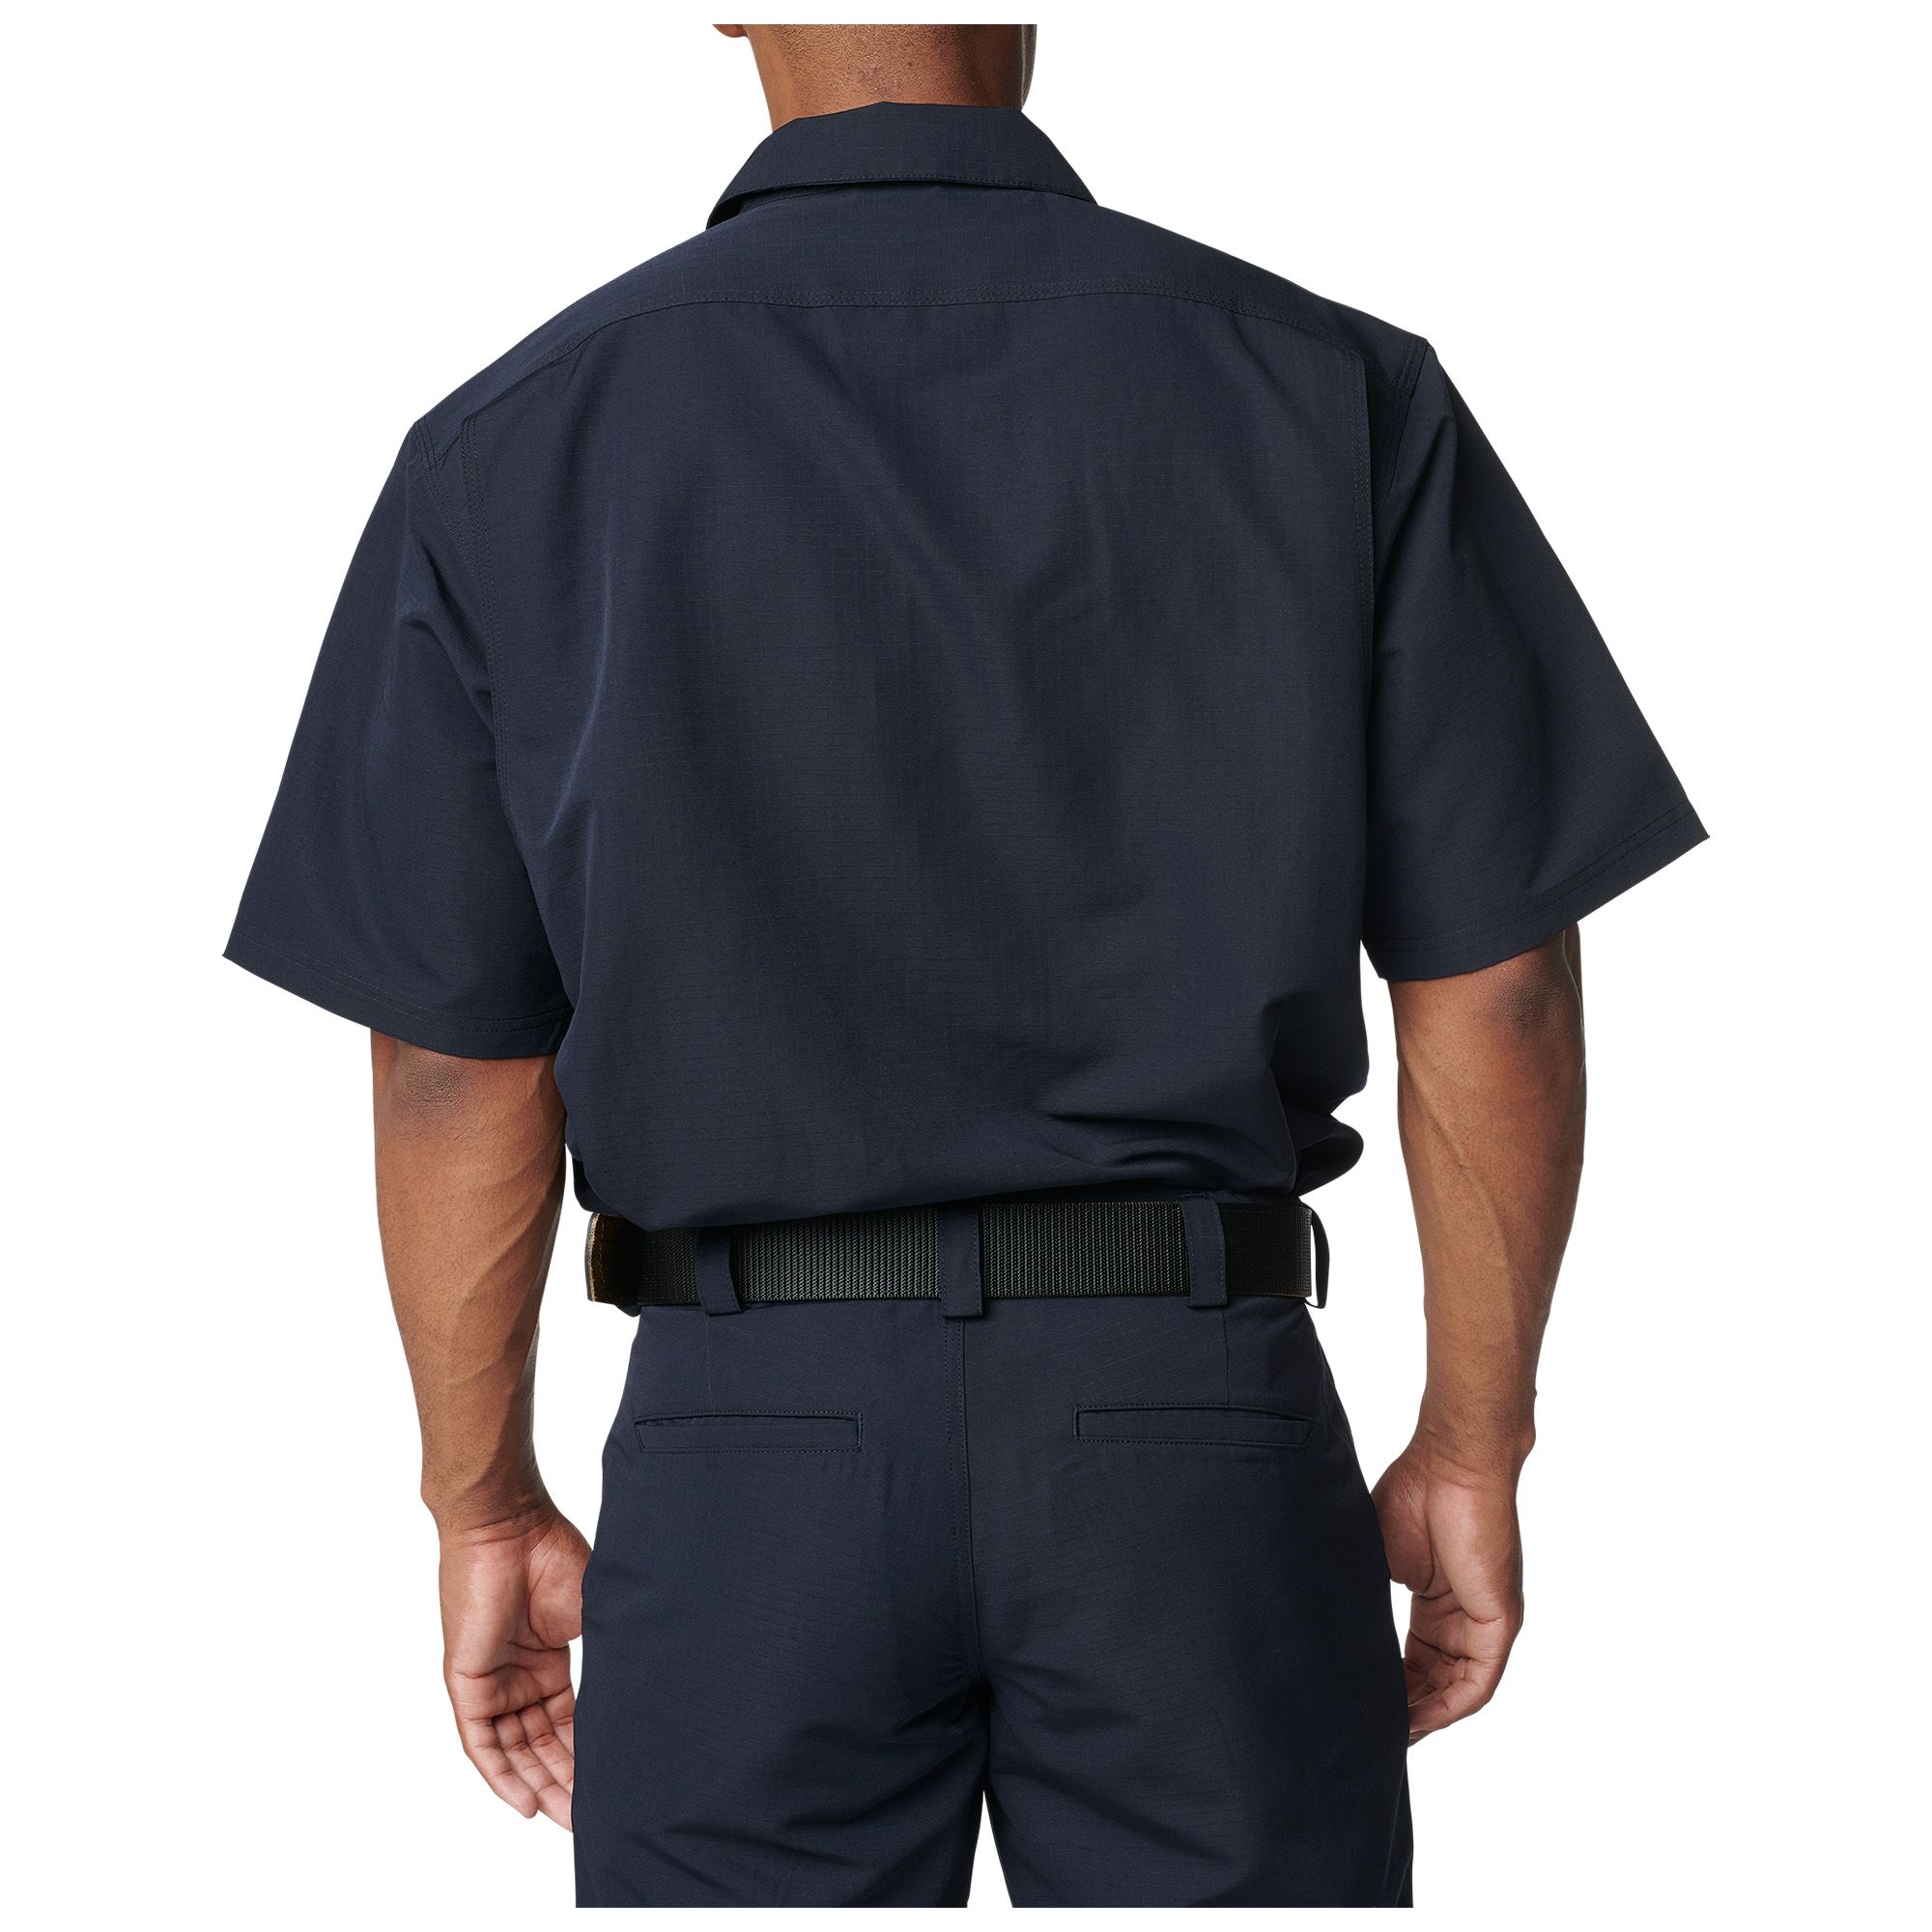 5.11 Fast-Tac TDU Short Sleeve Shirt